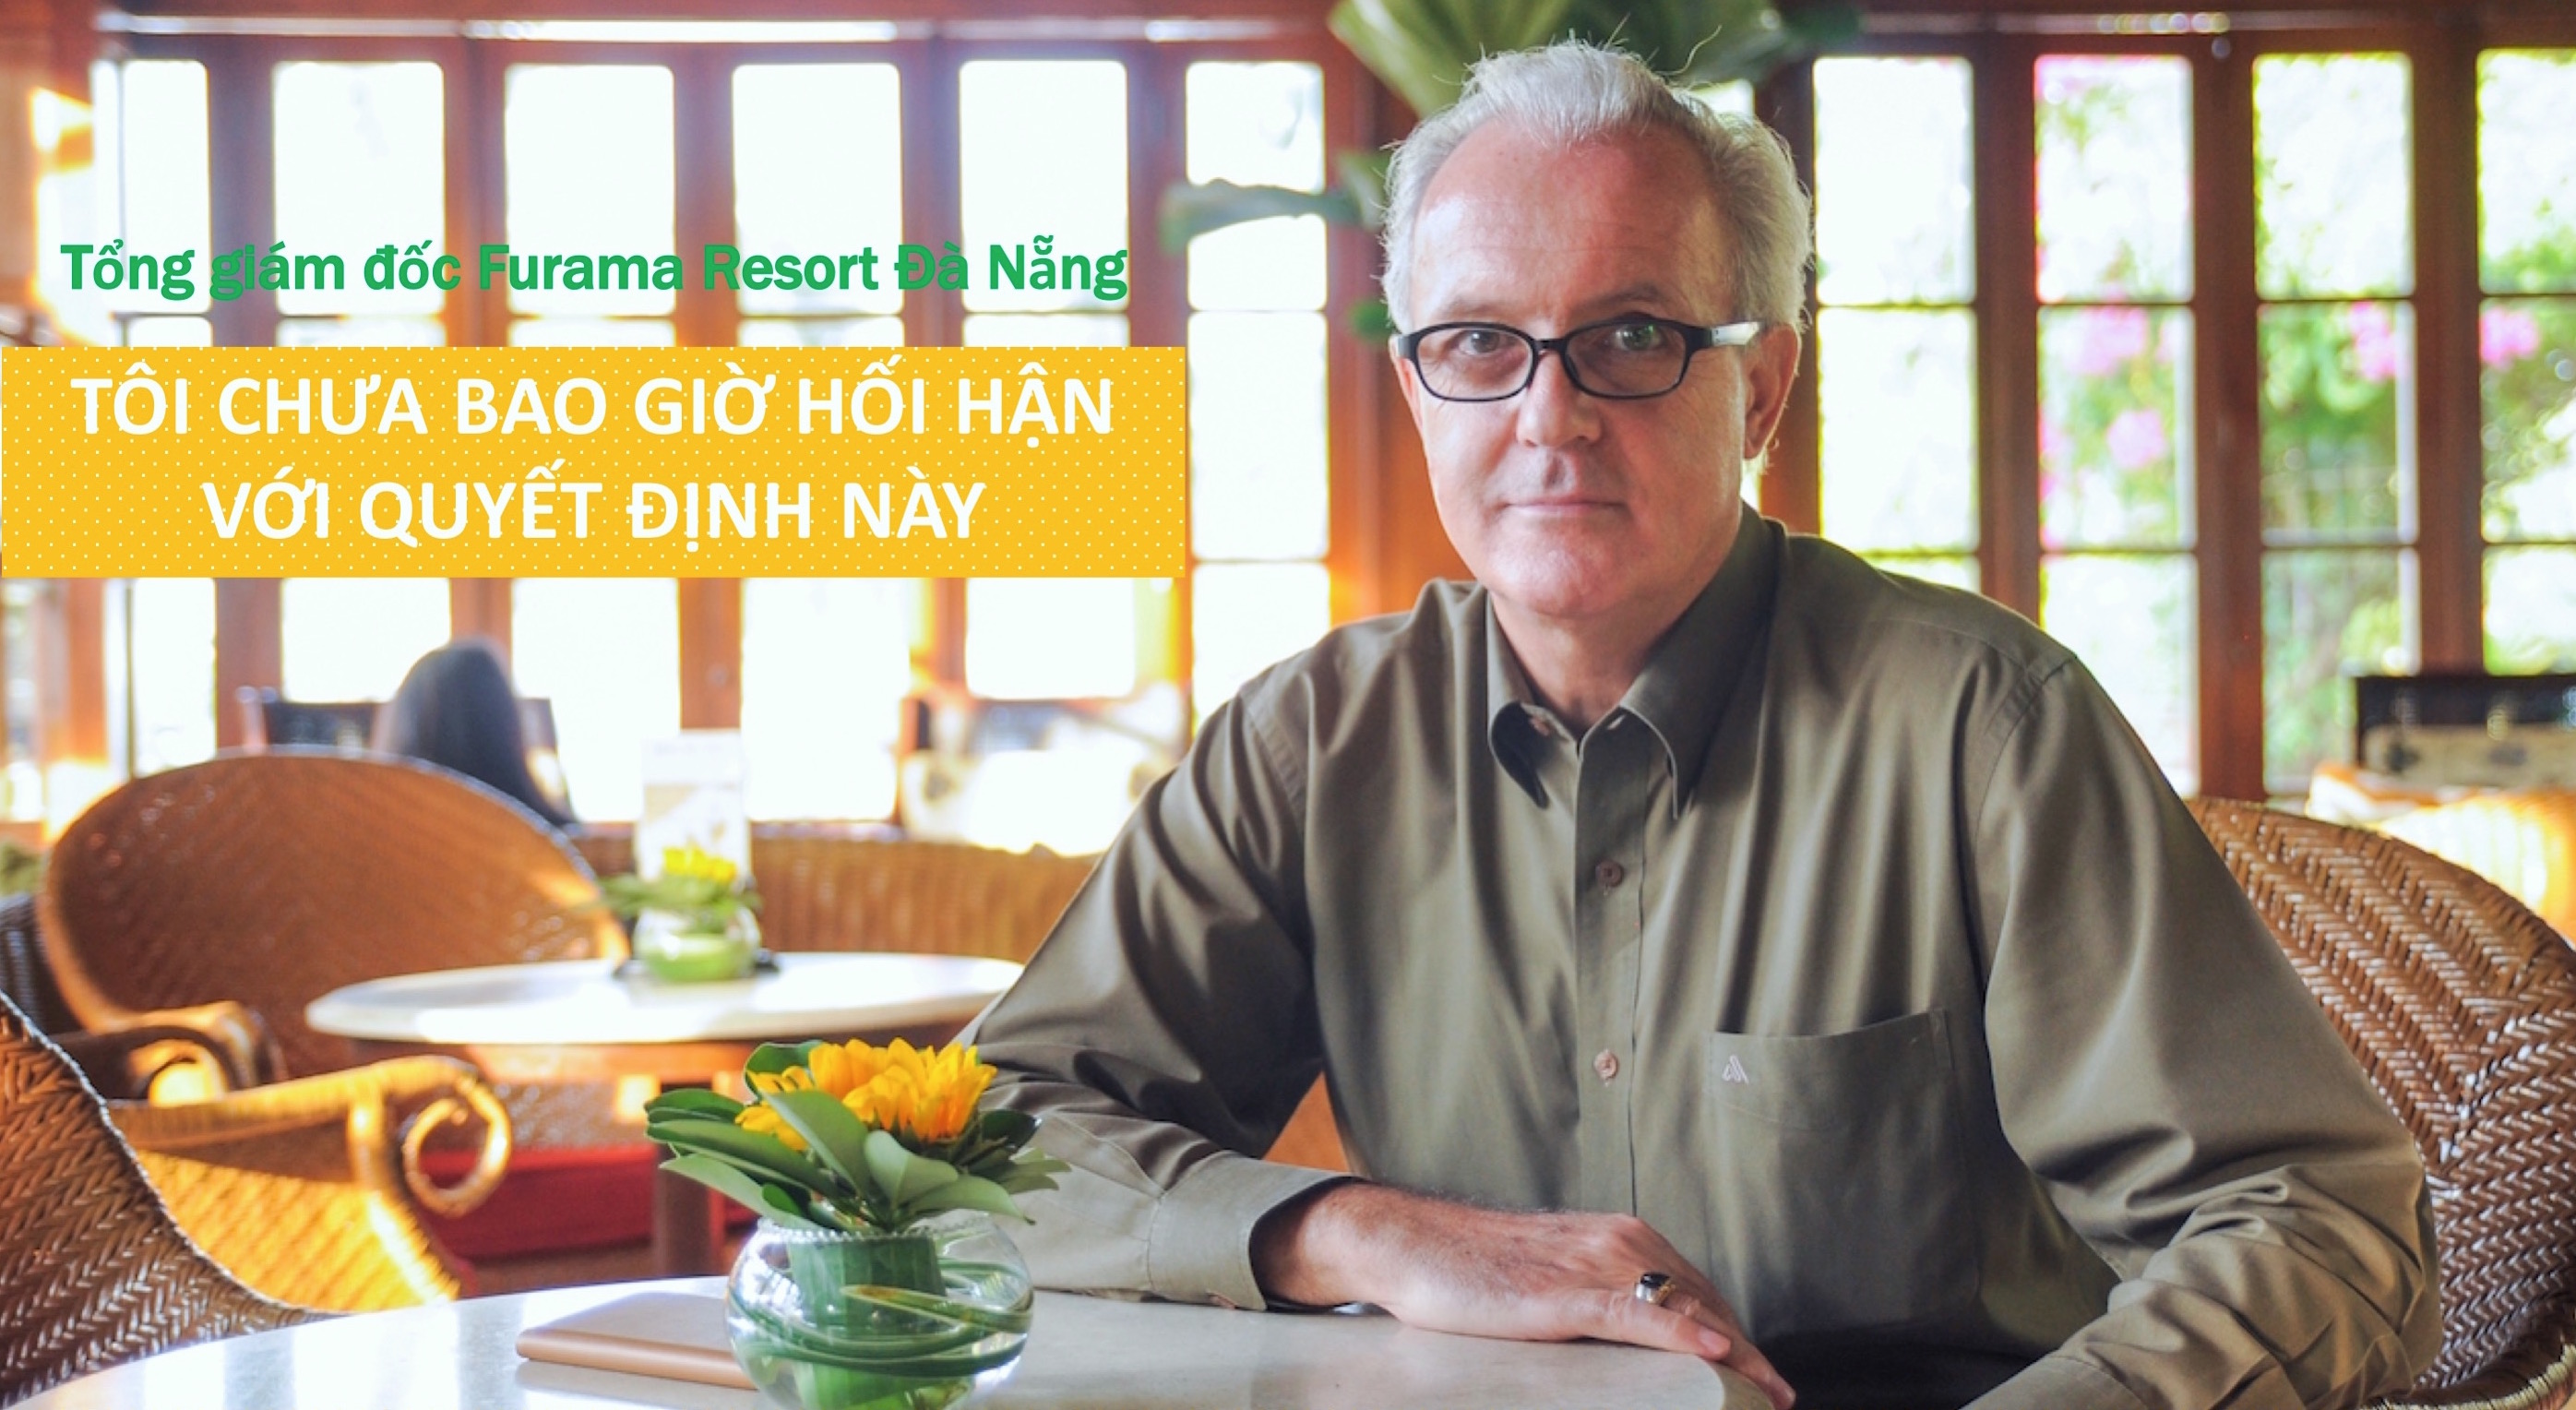 Tổng giám đốc Furama Resort Đà Nẵng: ‘Tôi chưa bao giờ hối hận với quyết định này’